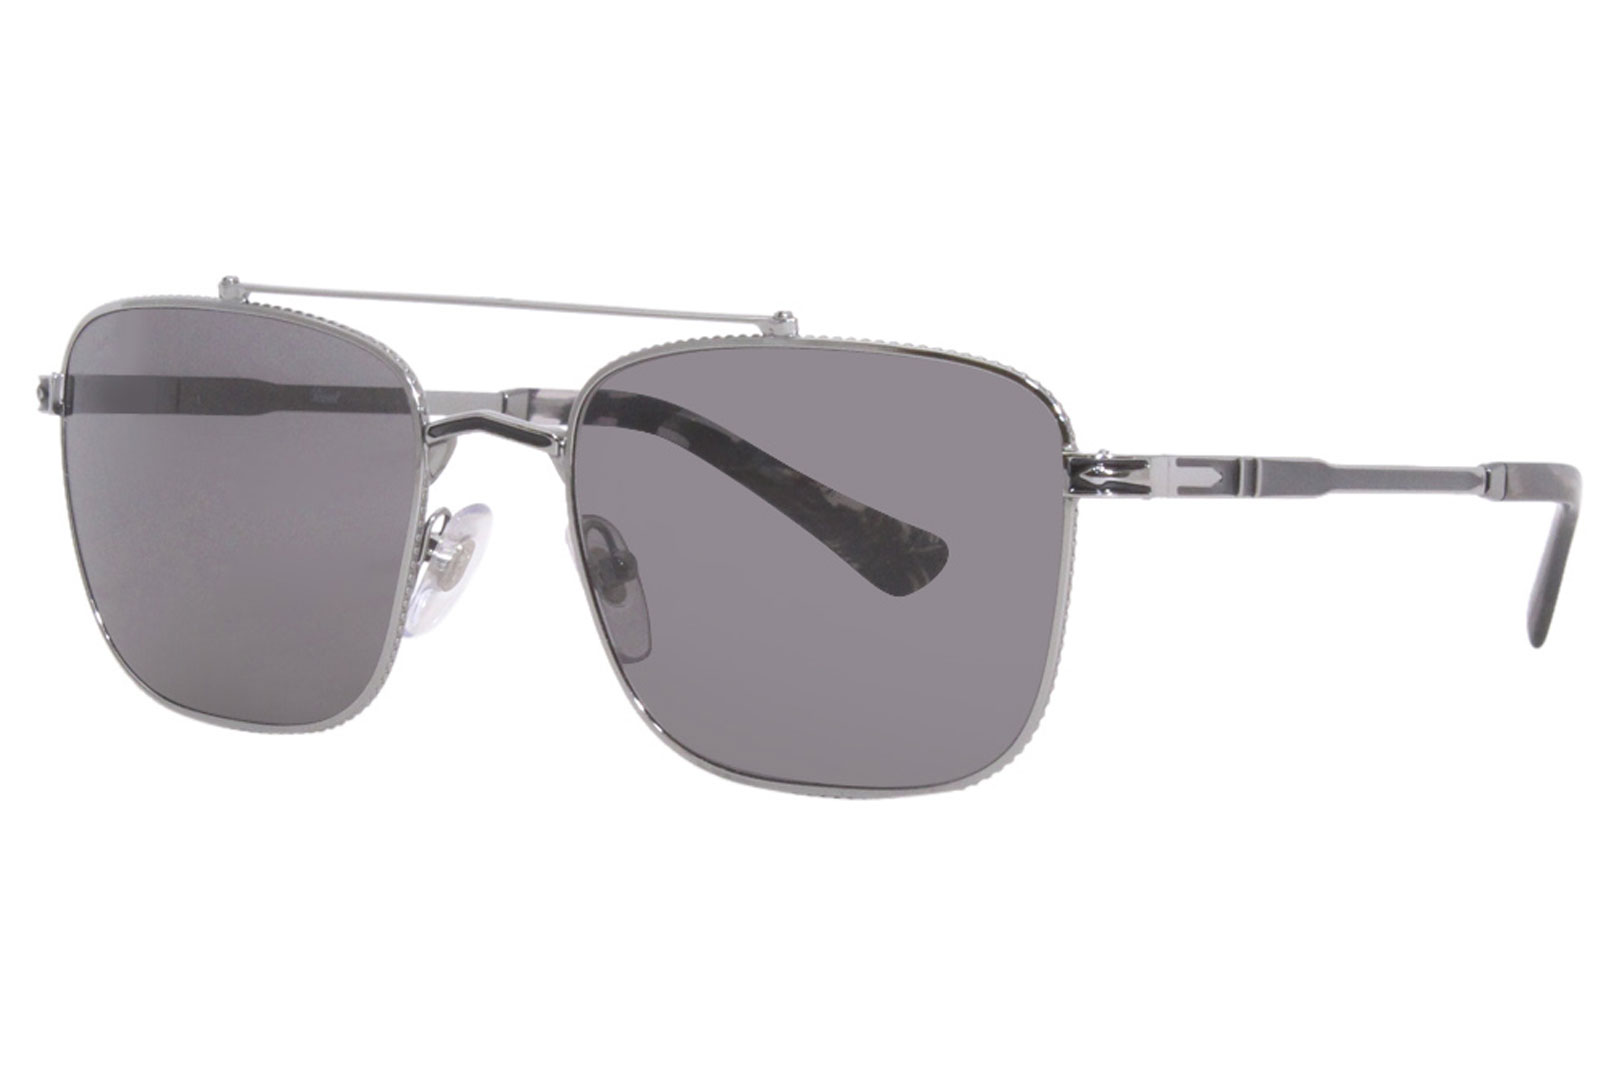 Persol Men's Square Sunglasses - Black